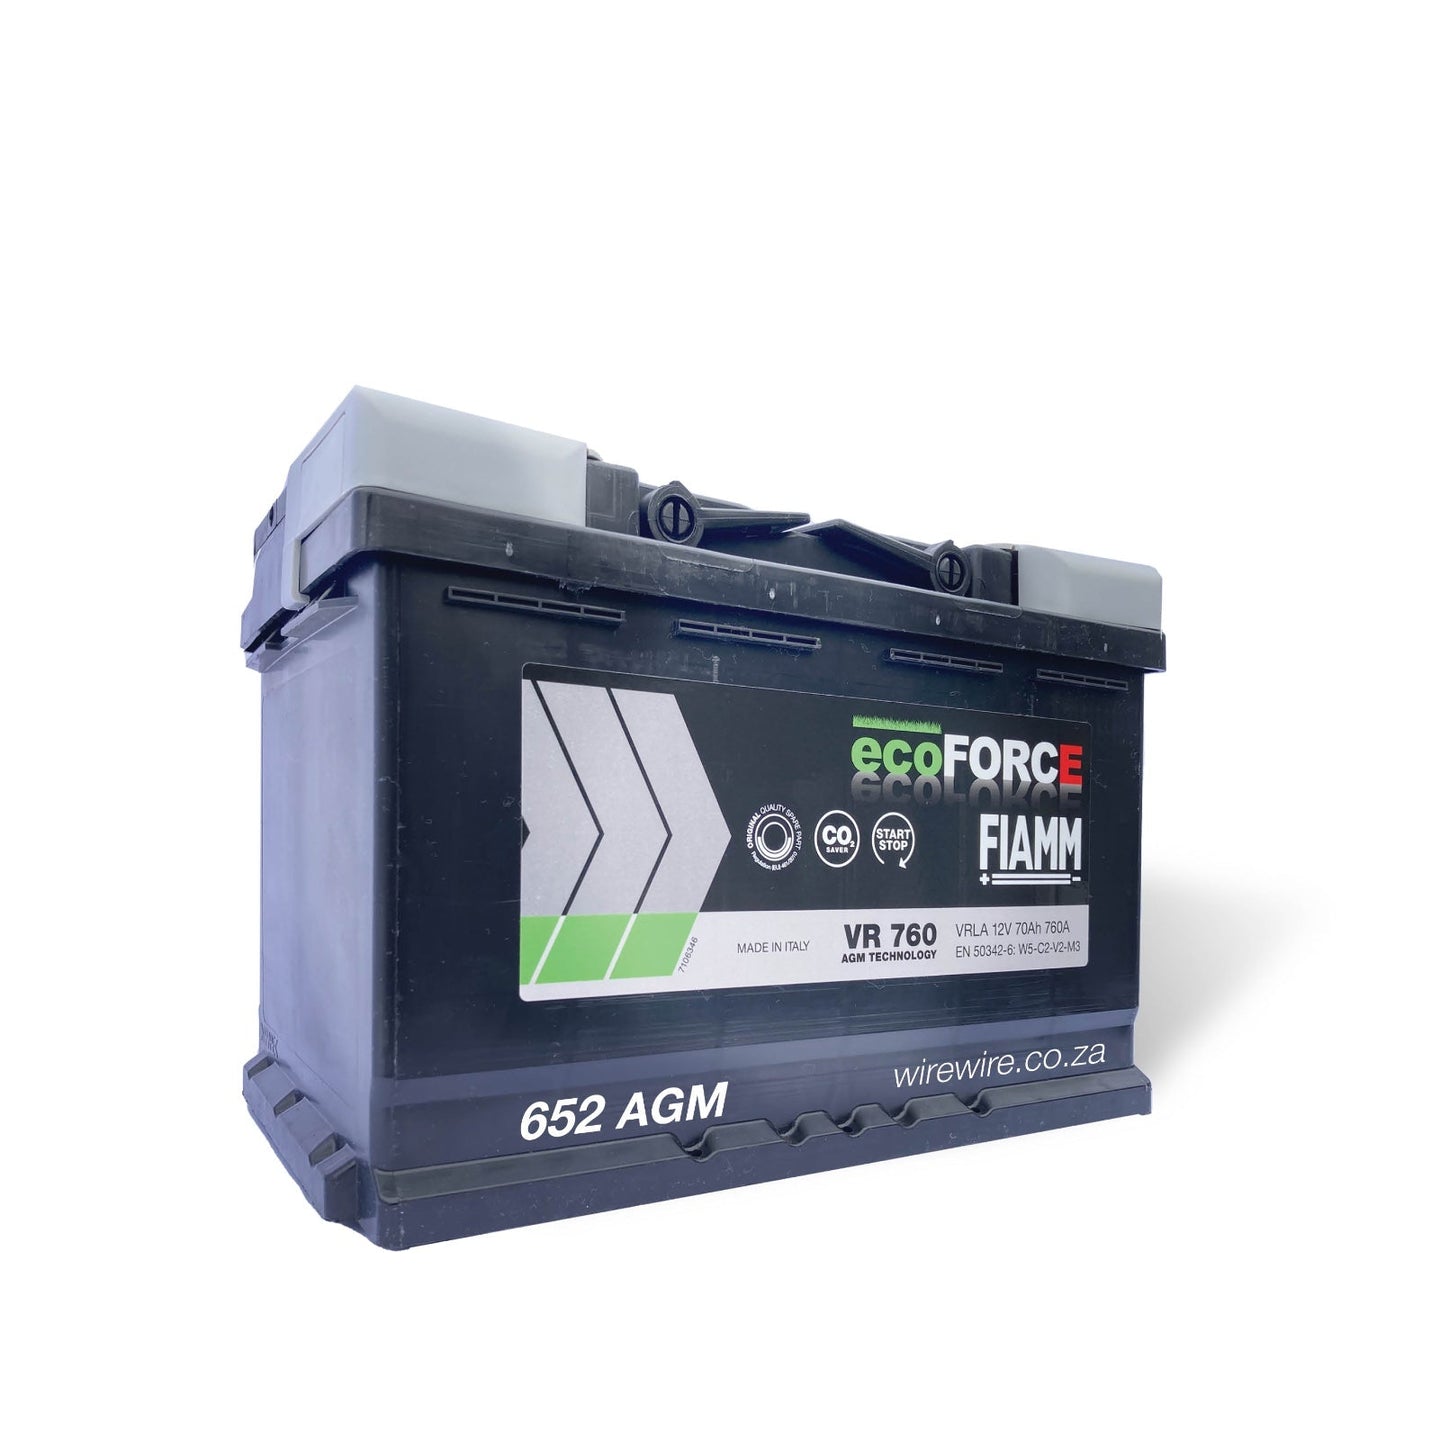 FIAMM ecoForce AGM 652 Car Battery-AGM Car Battery-wirewire- - www.wirewire.co.za